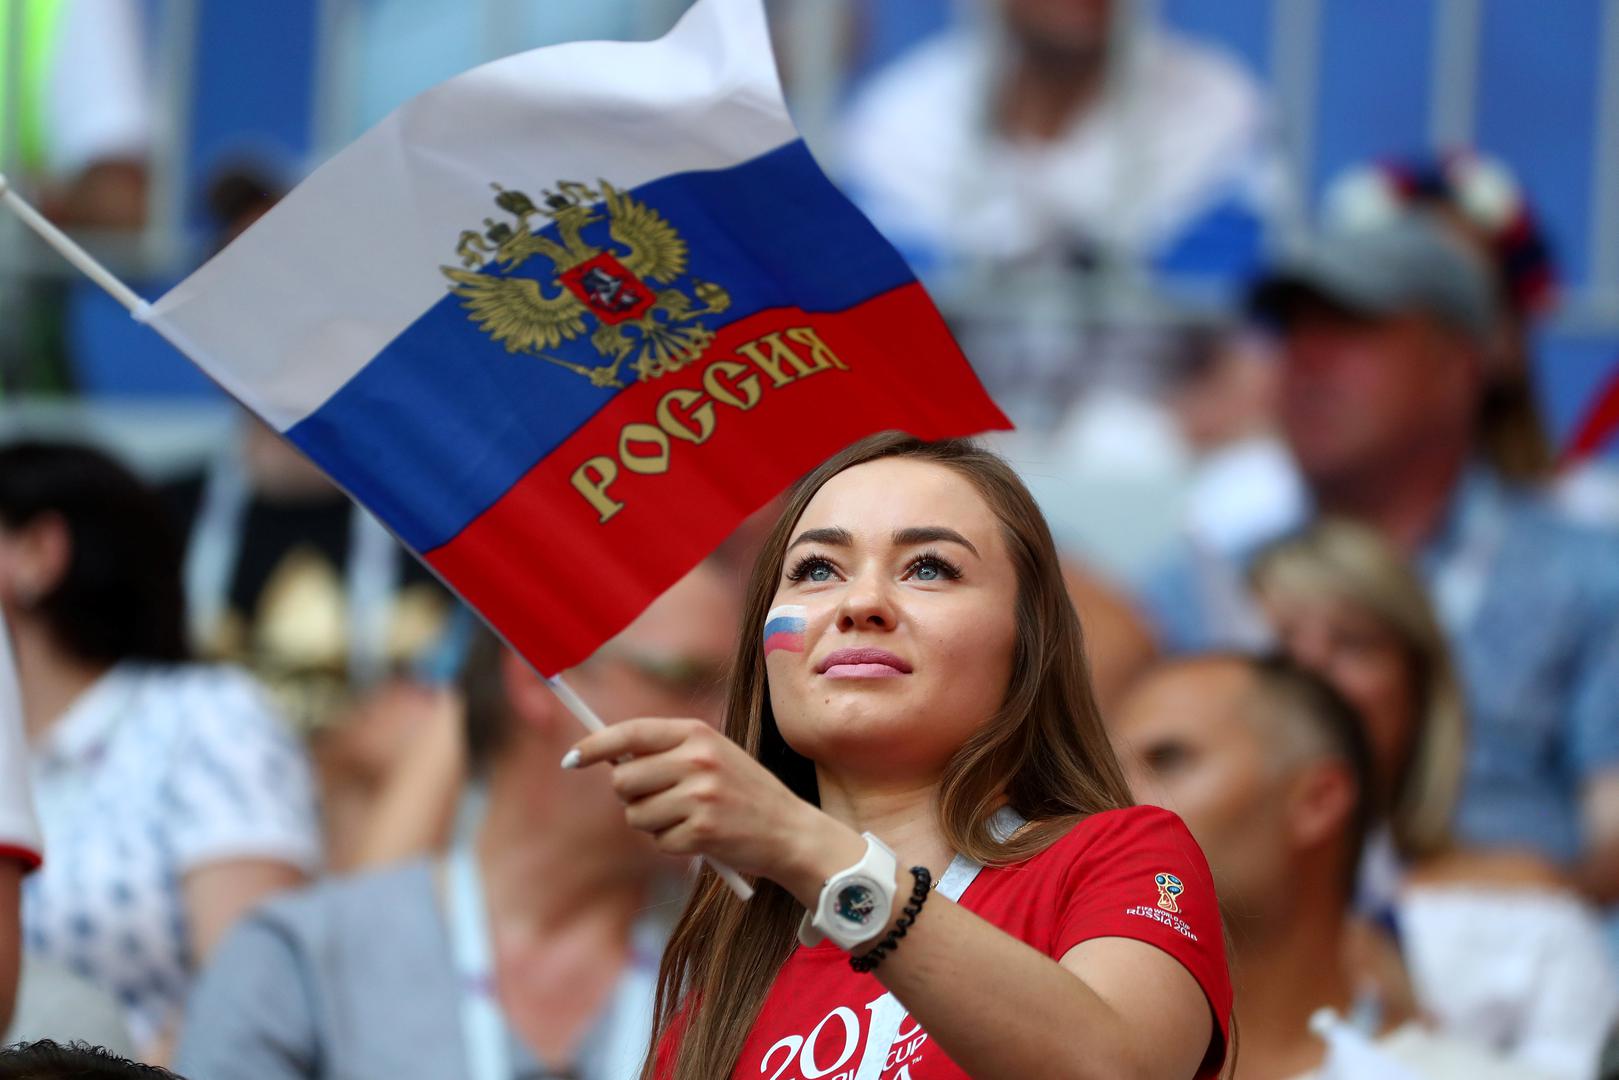 Rusija je danas u trećem kolu SP-a u Samari izgubila od Urugvaja s 3:0 i tako natjecanje u skupini A završila na drugom mjestu